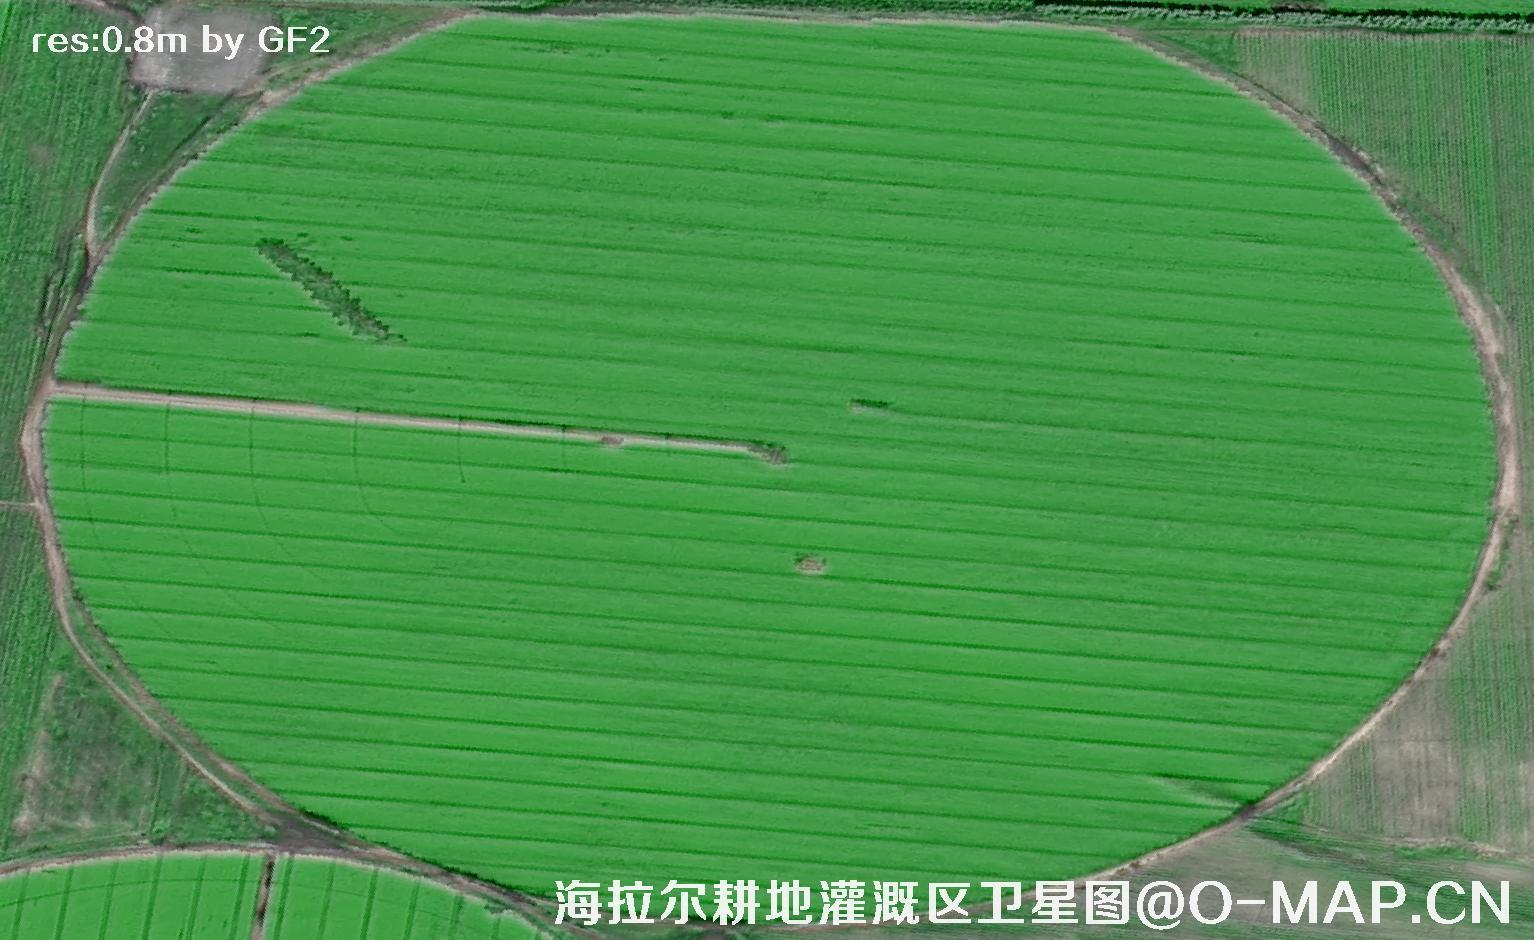 内蒙古呼伦贝尔海拉尔耕地灌溉区域2021卫星图